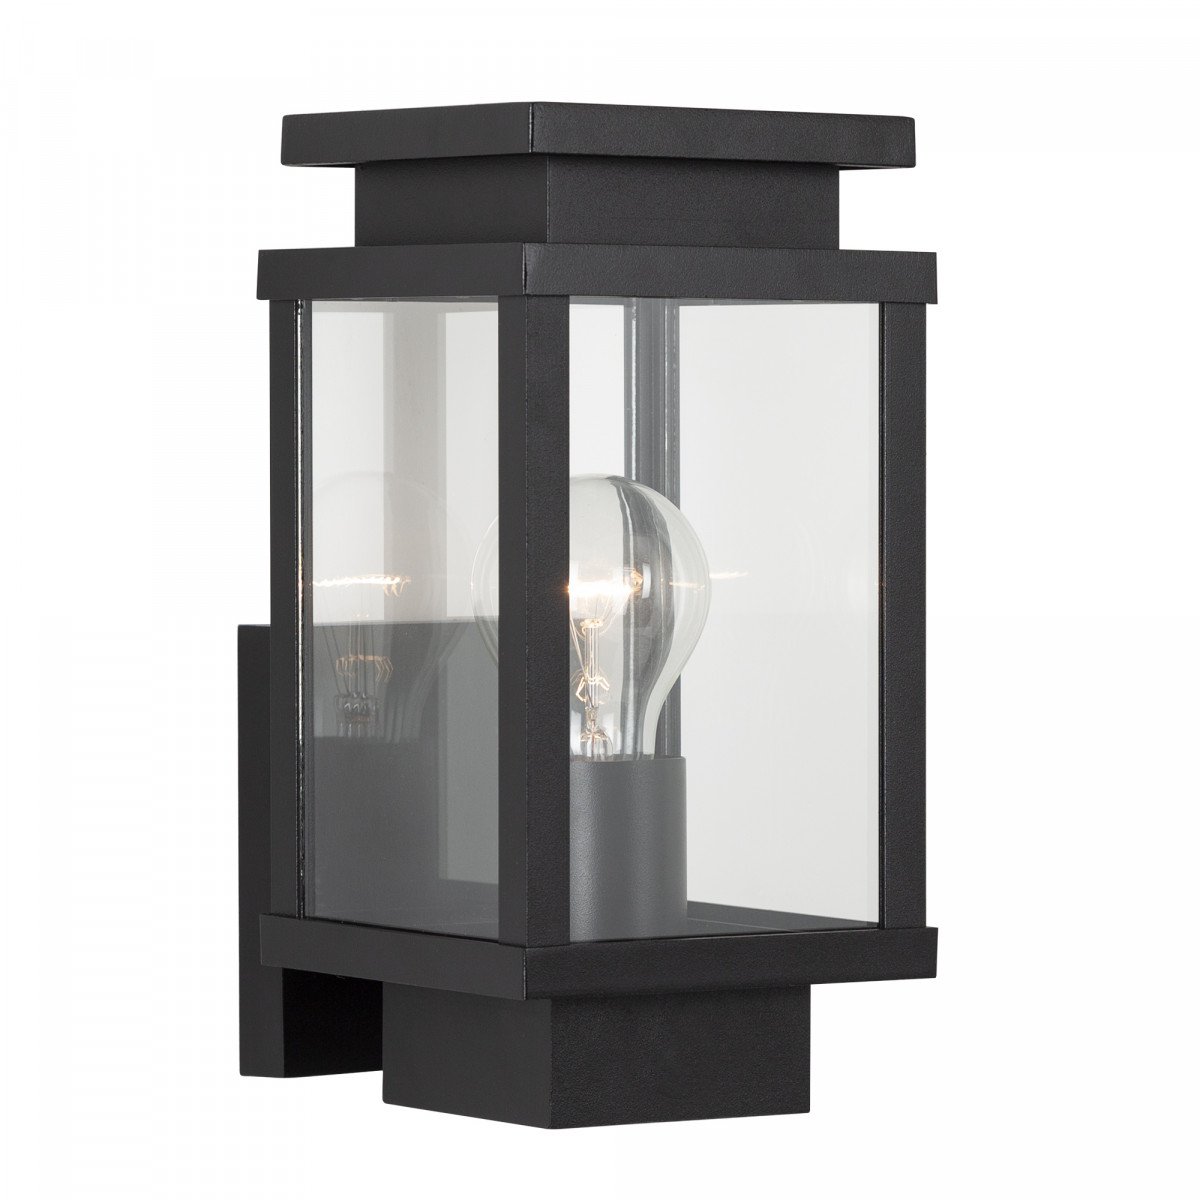 Schwarze Wandlampe mit quadratischer Form und Fenstern mit echtem Glas